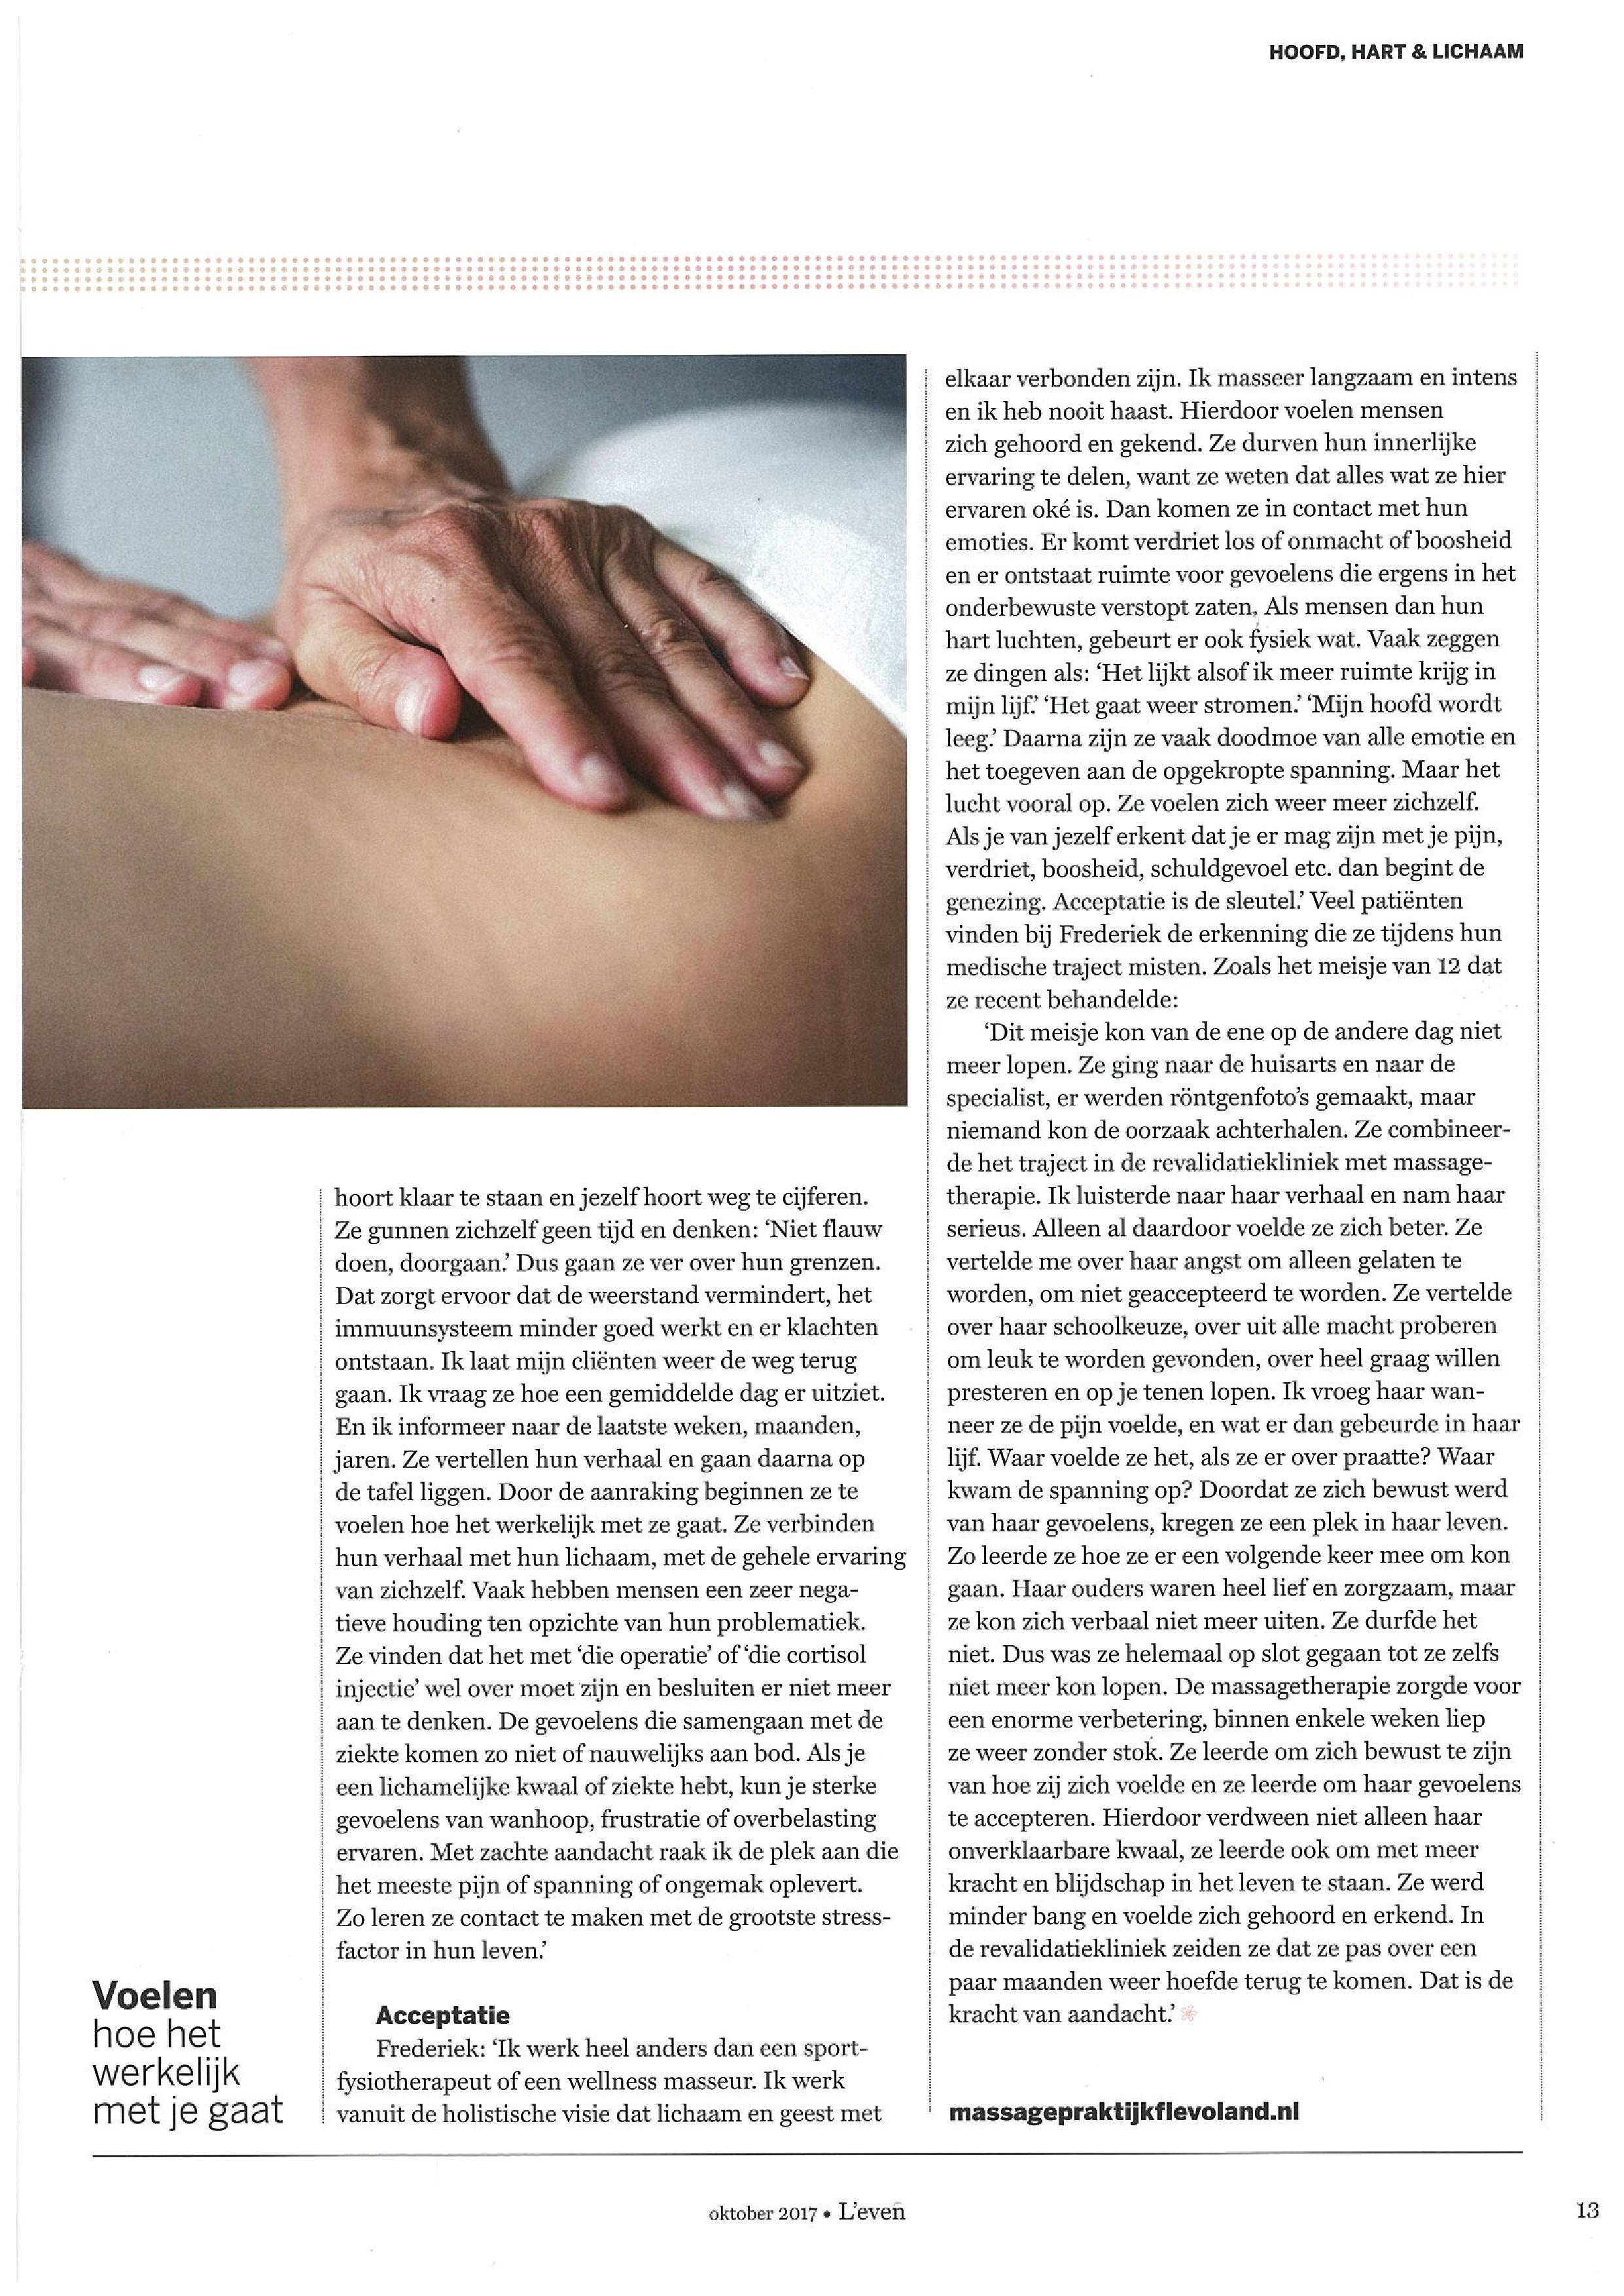 Massage als medicijn.page4